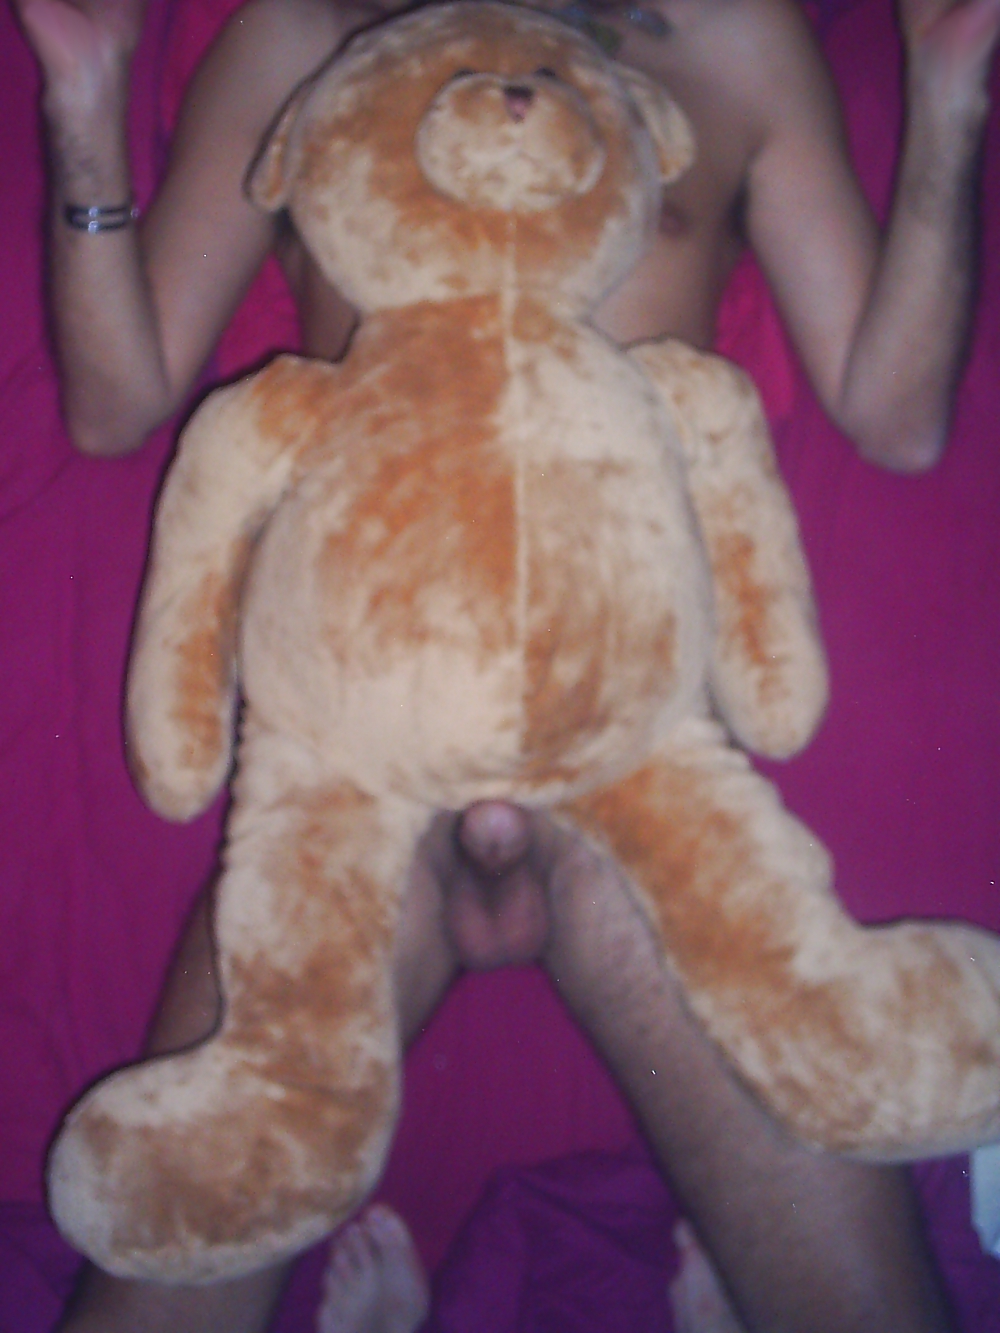 Me and my Teddy Bear